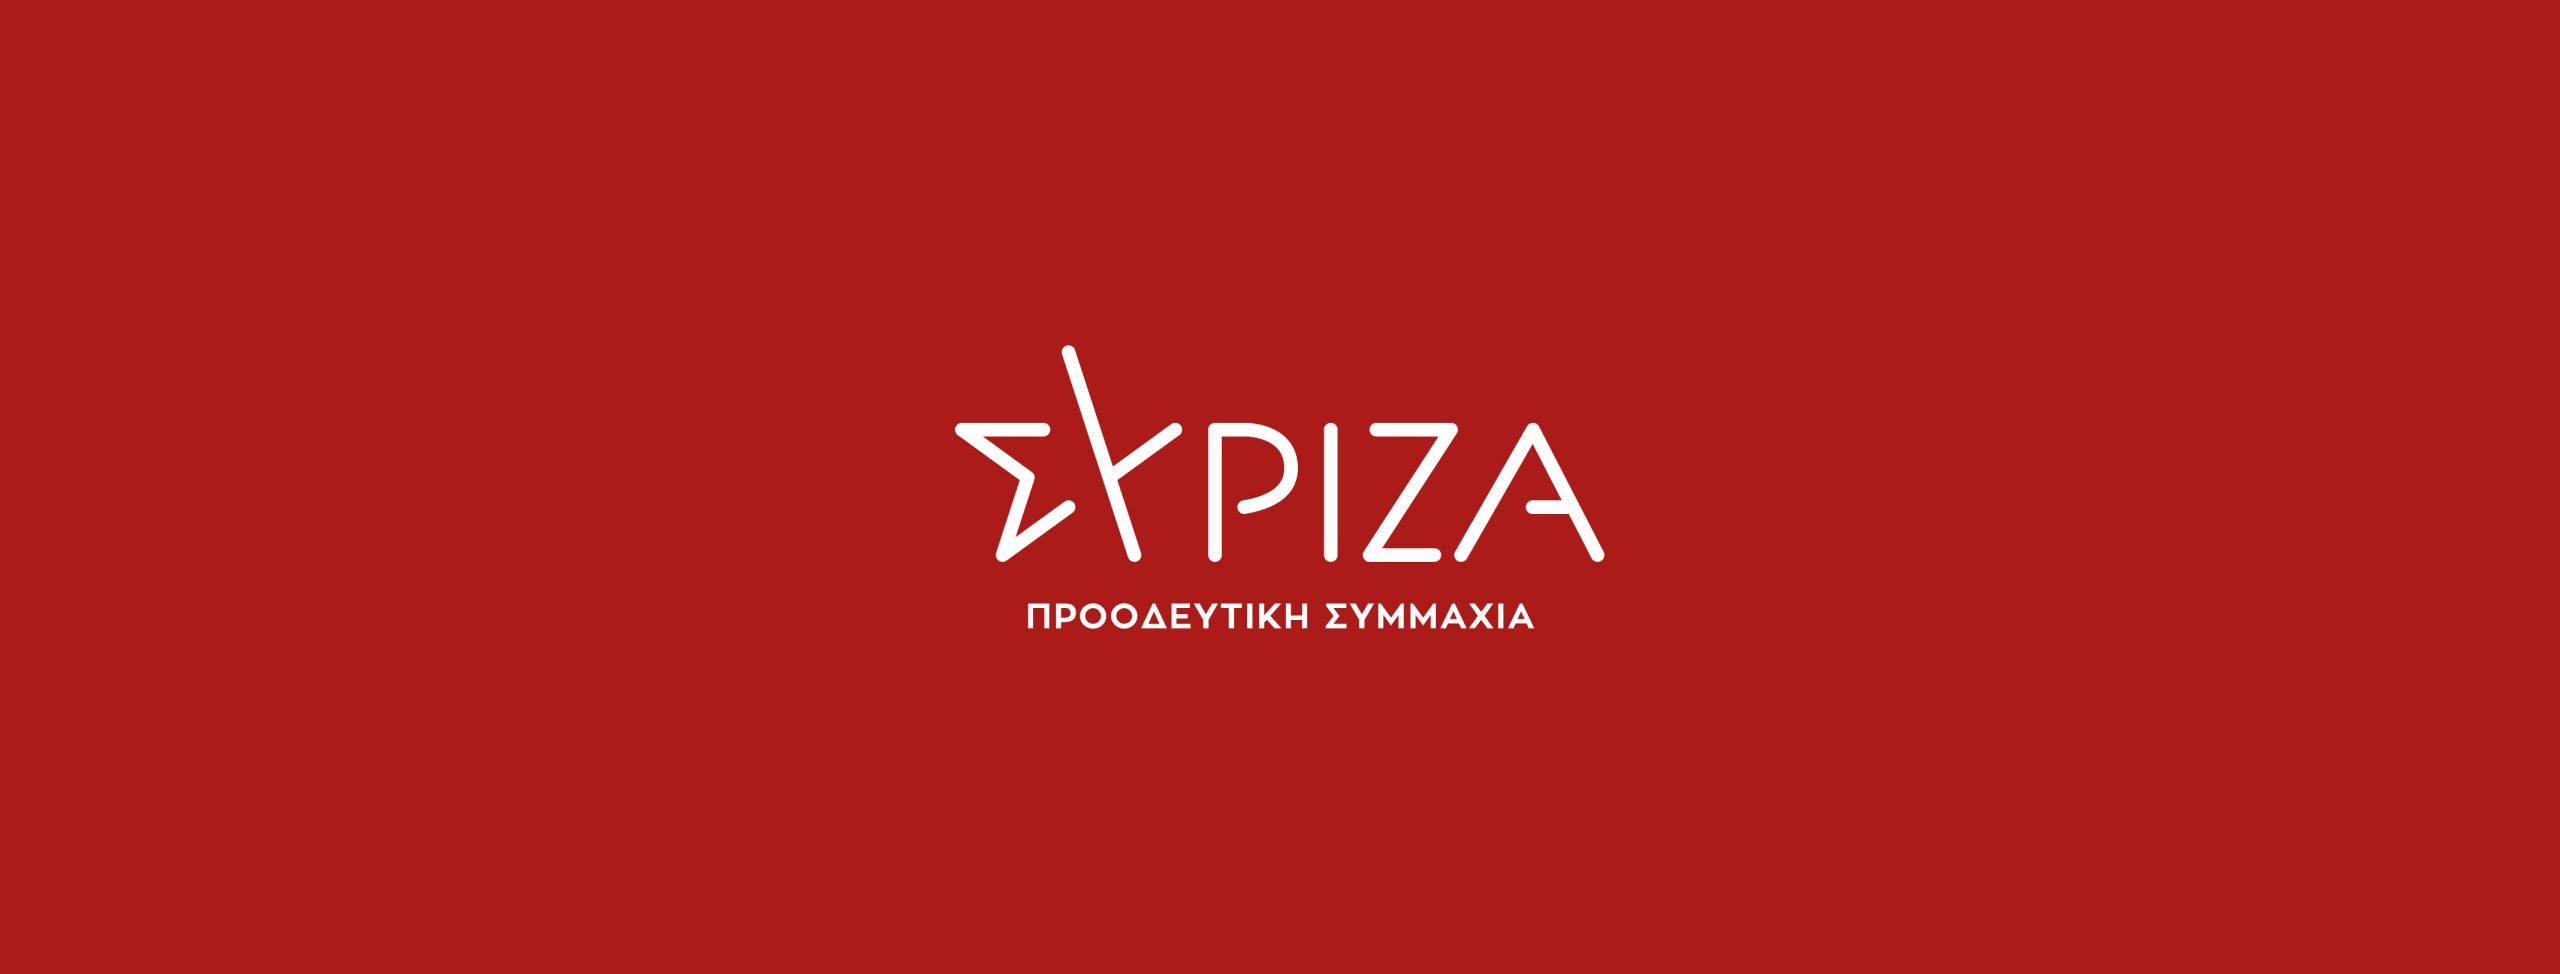 ΣΥΡΙΖΑ: «Μετά από μήνες αδράνειας η κυβέρνηση δημοσίευσε προκήρυξη για προσλήψεις στον ΟΣΥ»